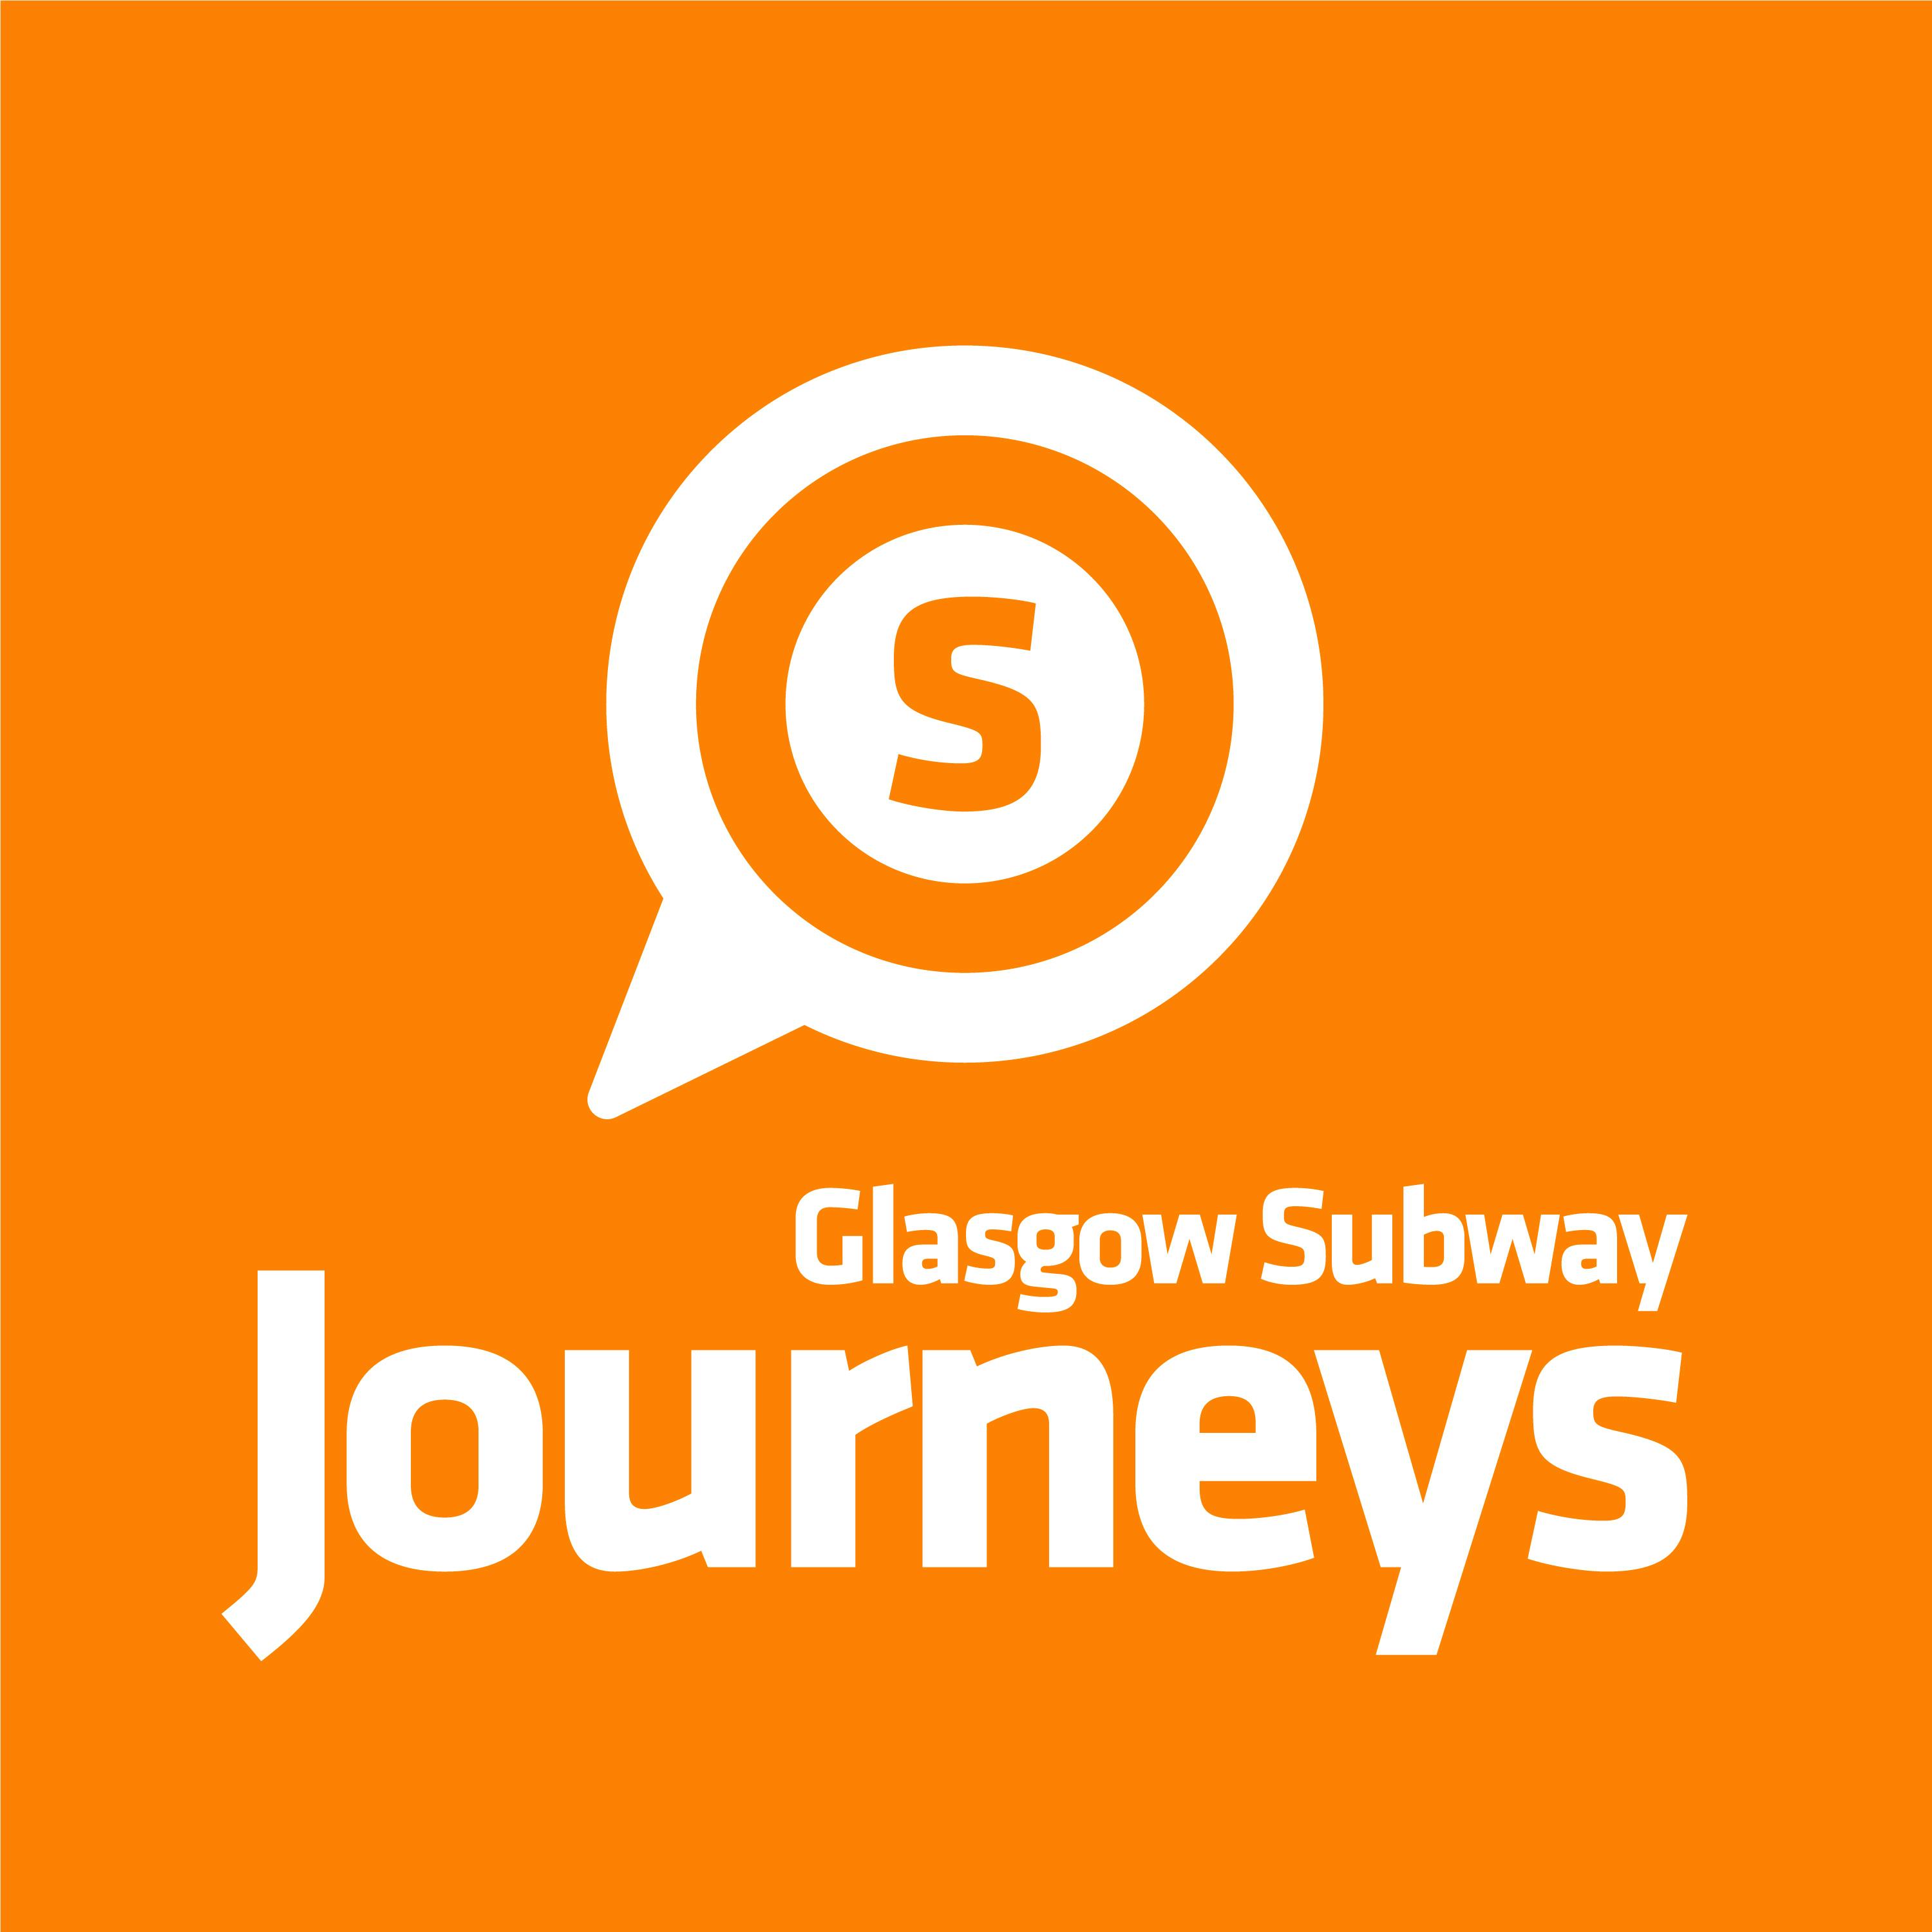 Glasgow Subway’s Future: Sustainability Goals